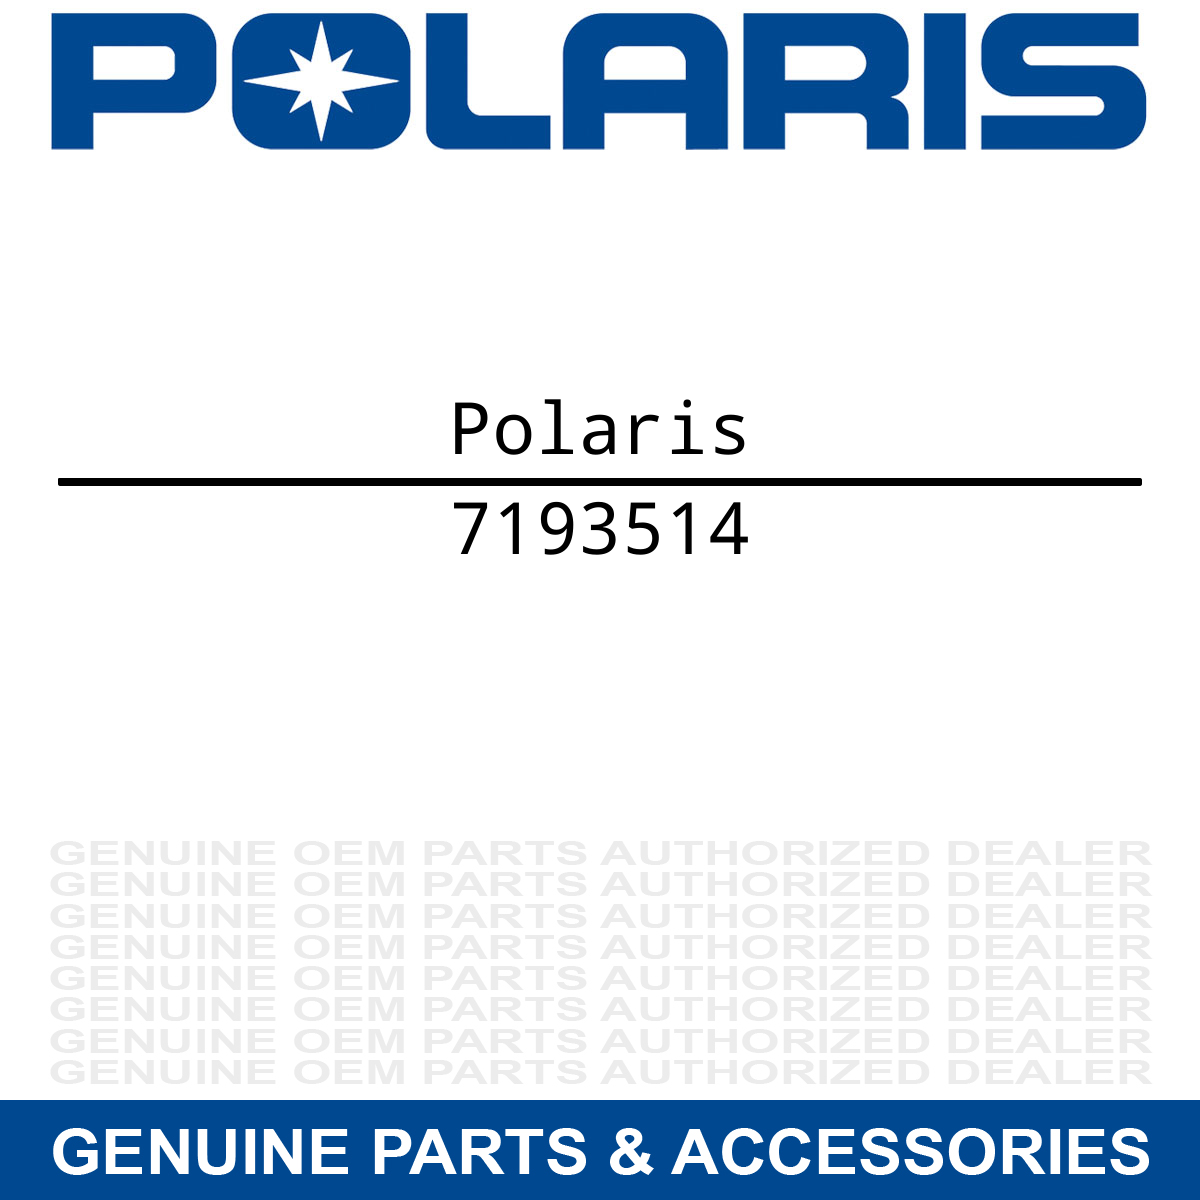 Polaris 7193514 Decal